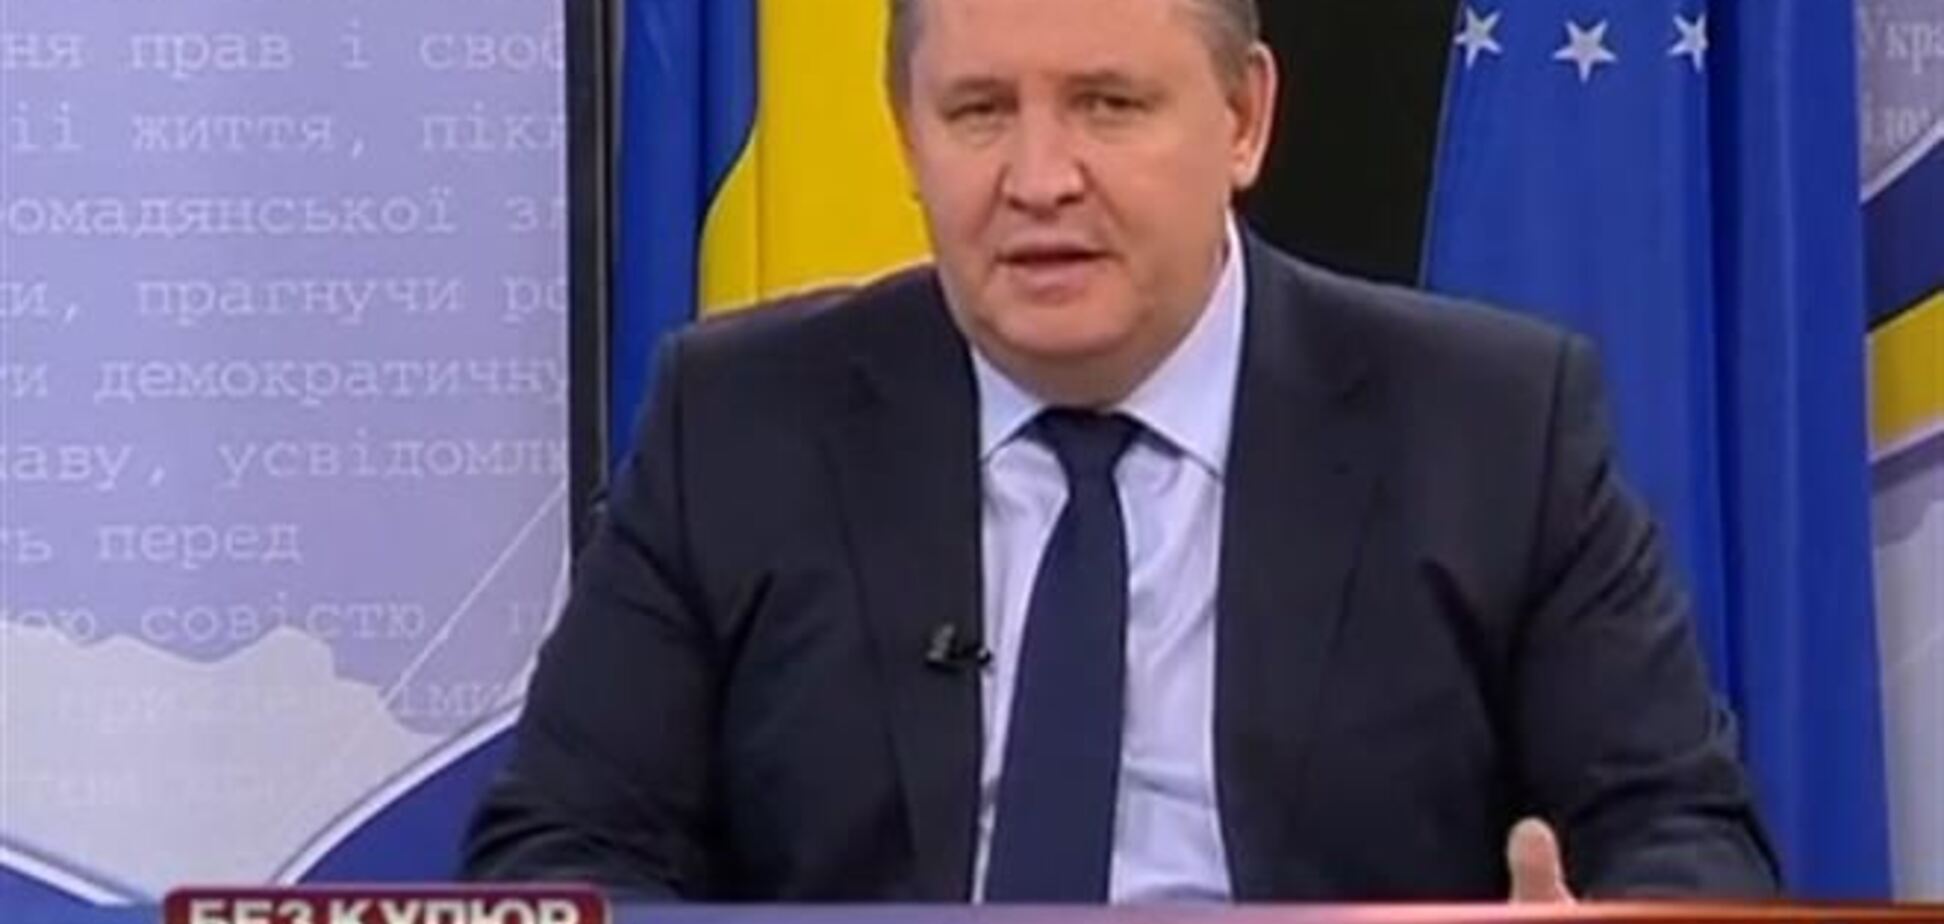 Луганский телеканал подписал речь губернатора 'Дезинформация!'